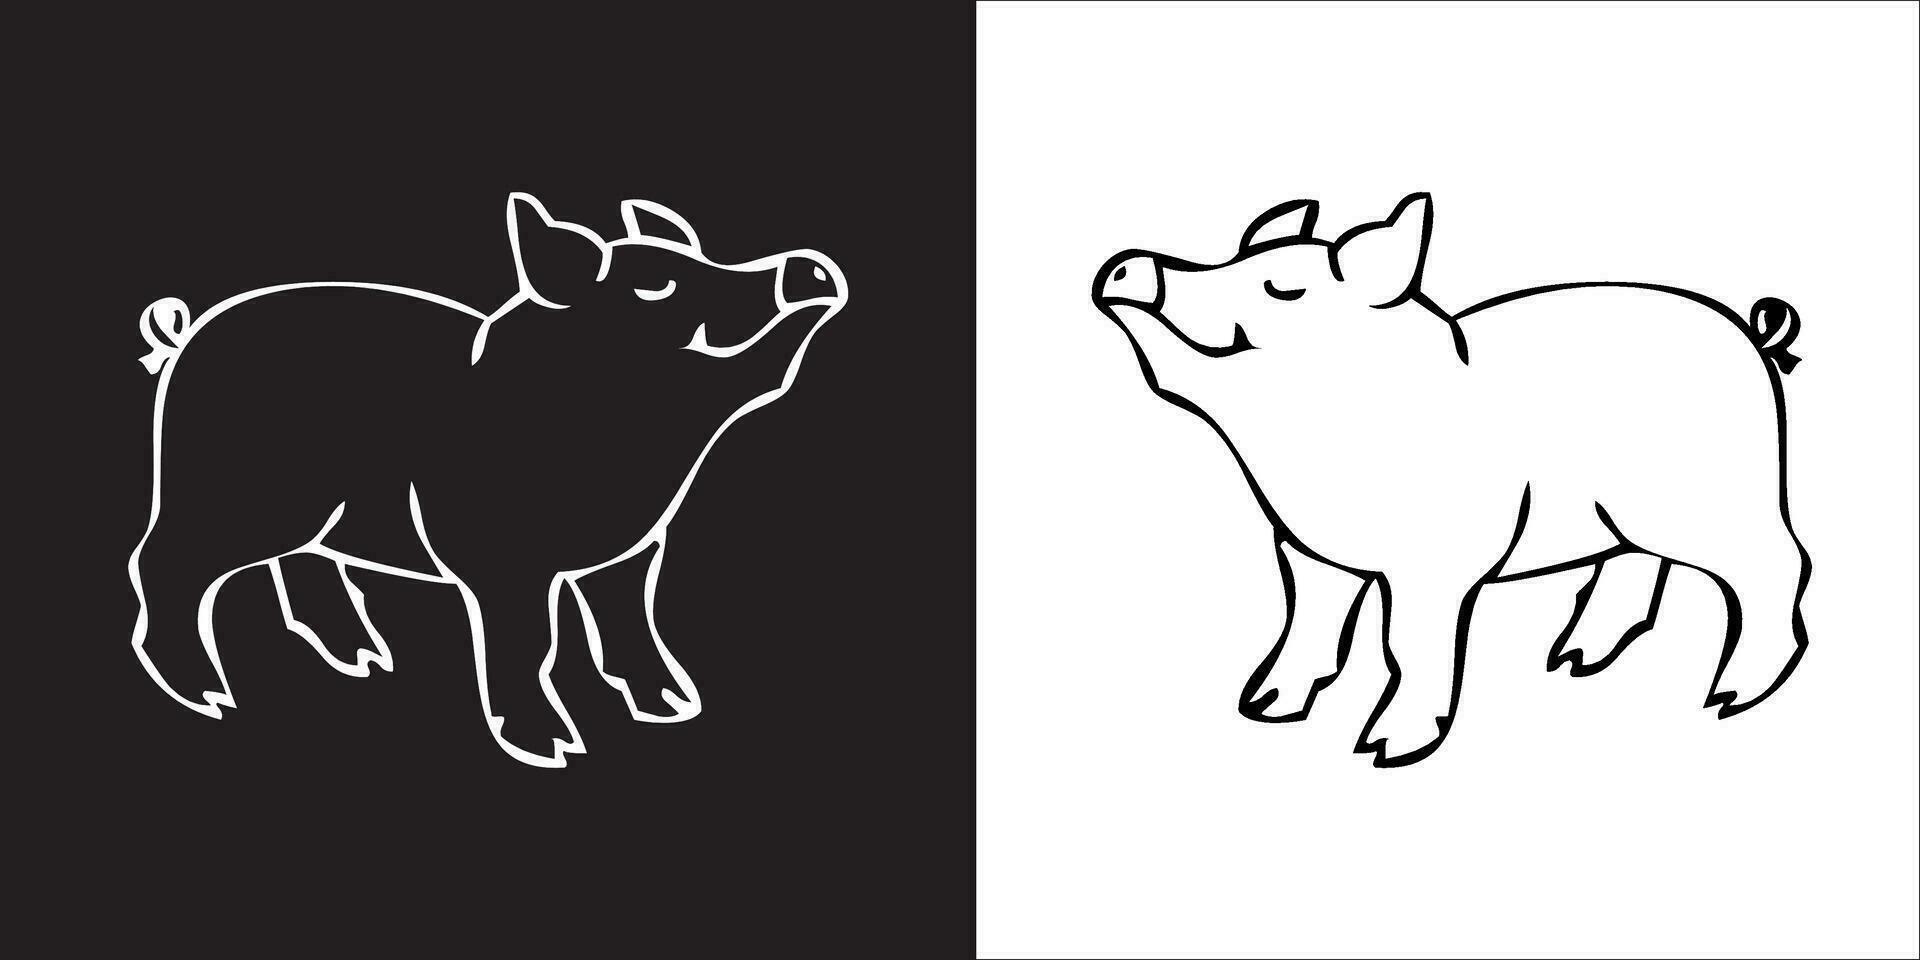 illustration vecteur graphique de porc icône